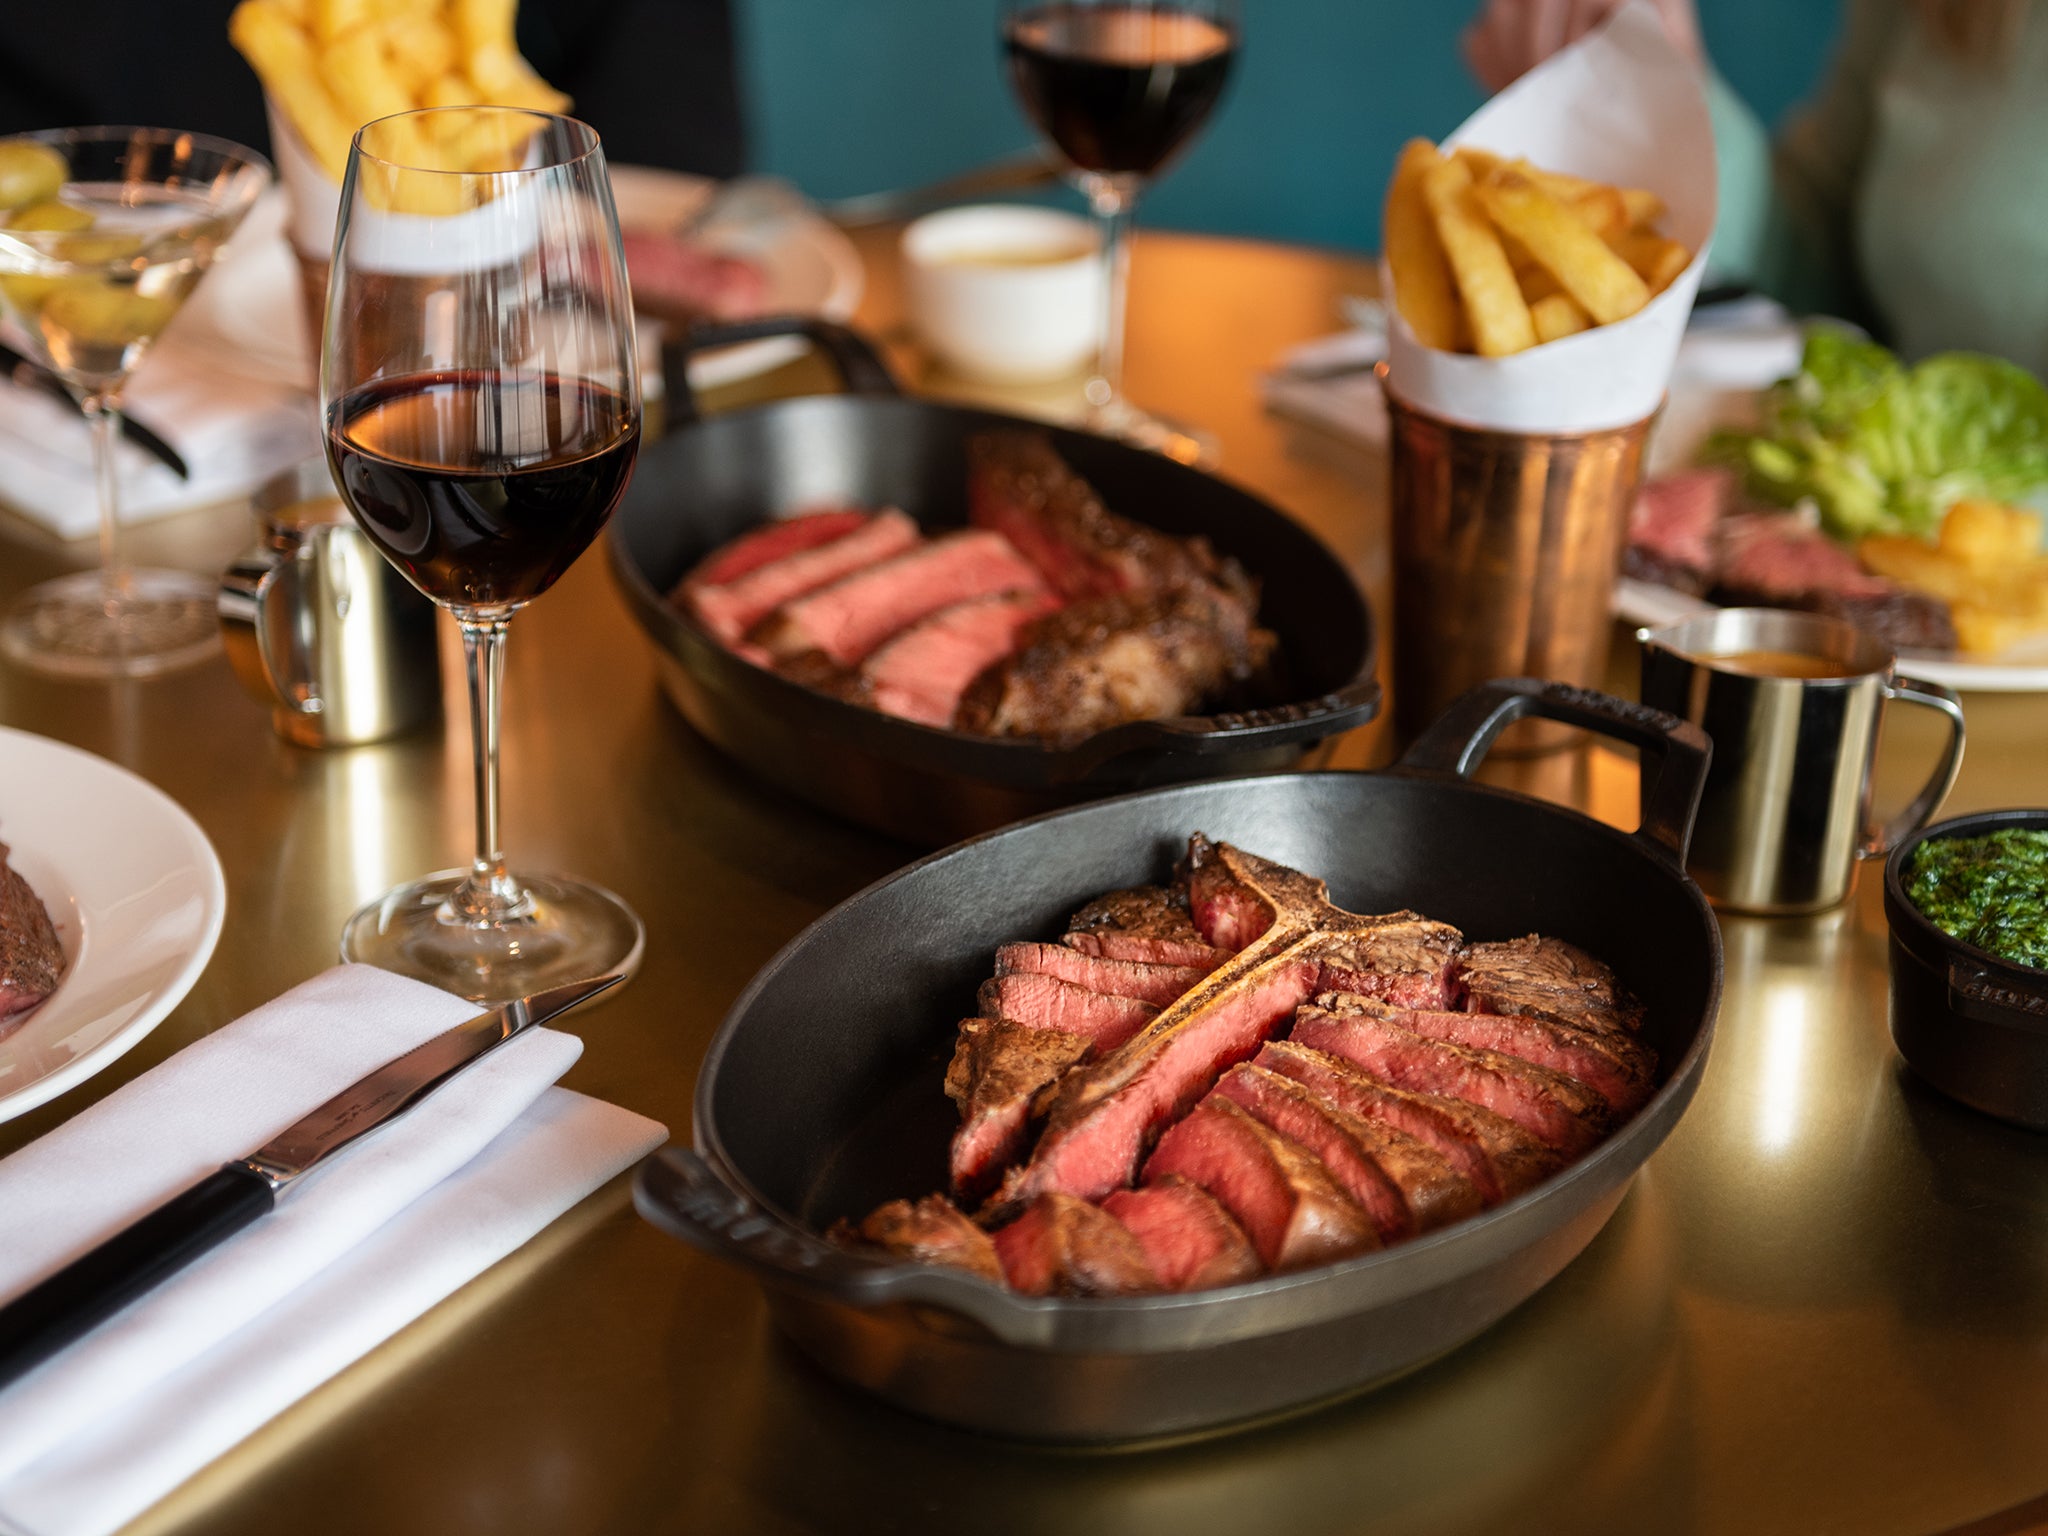 Steak restaurant Hawksmoor now has 14 sites across the UK